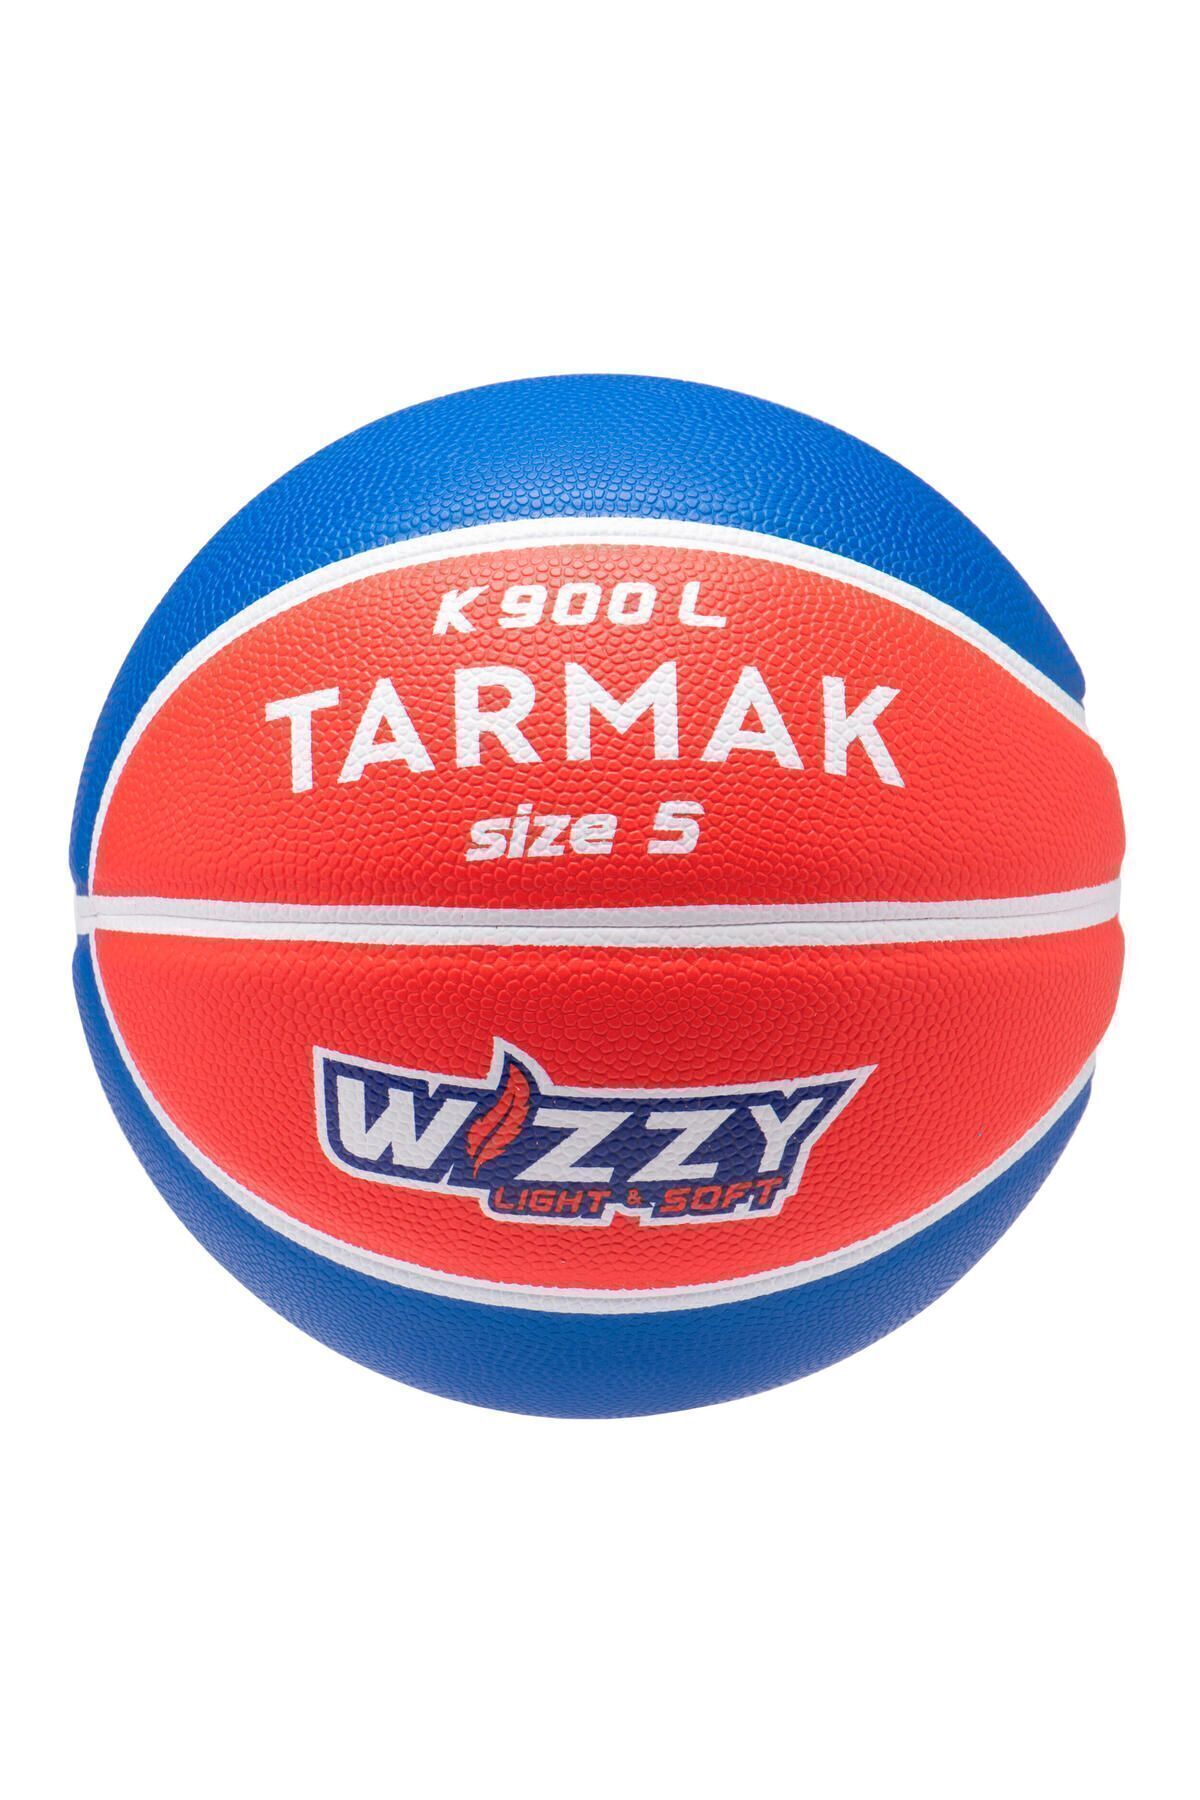 Decathlon Basketbol Topu - 5 Numara - Mavi / Kırmızı - K900 WIZZY